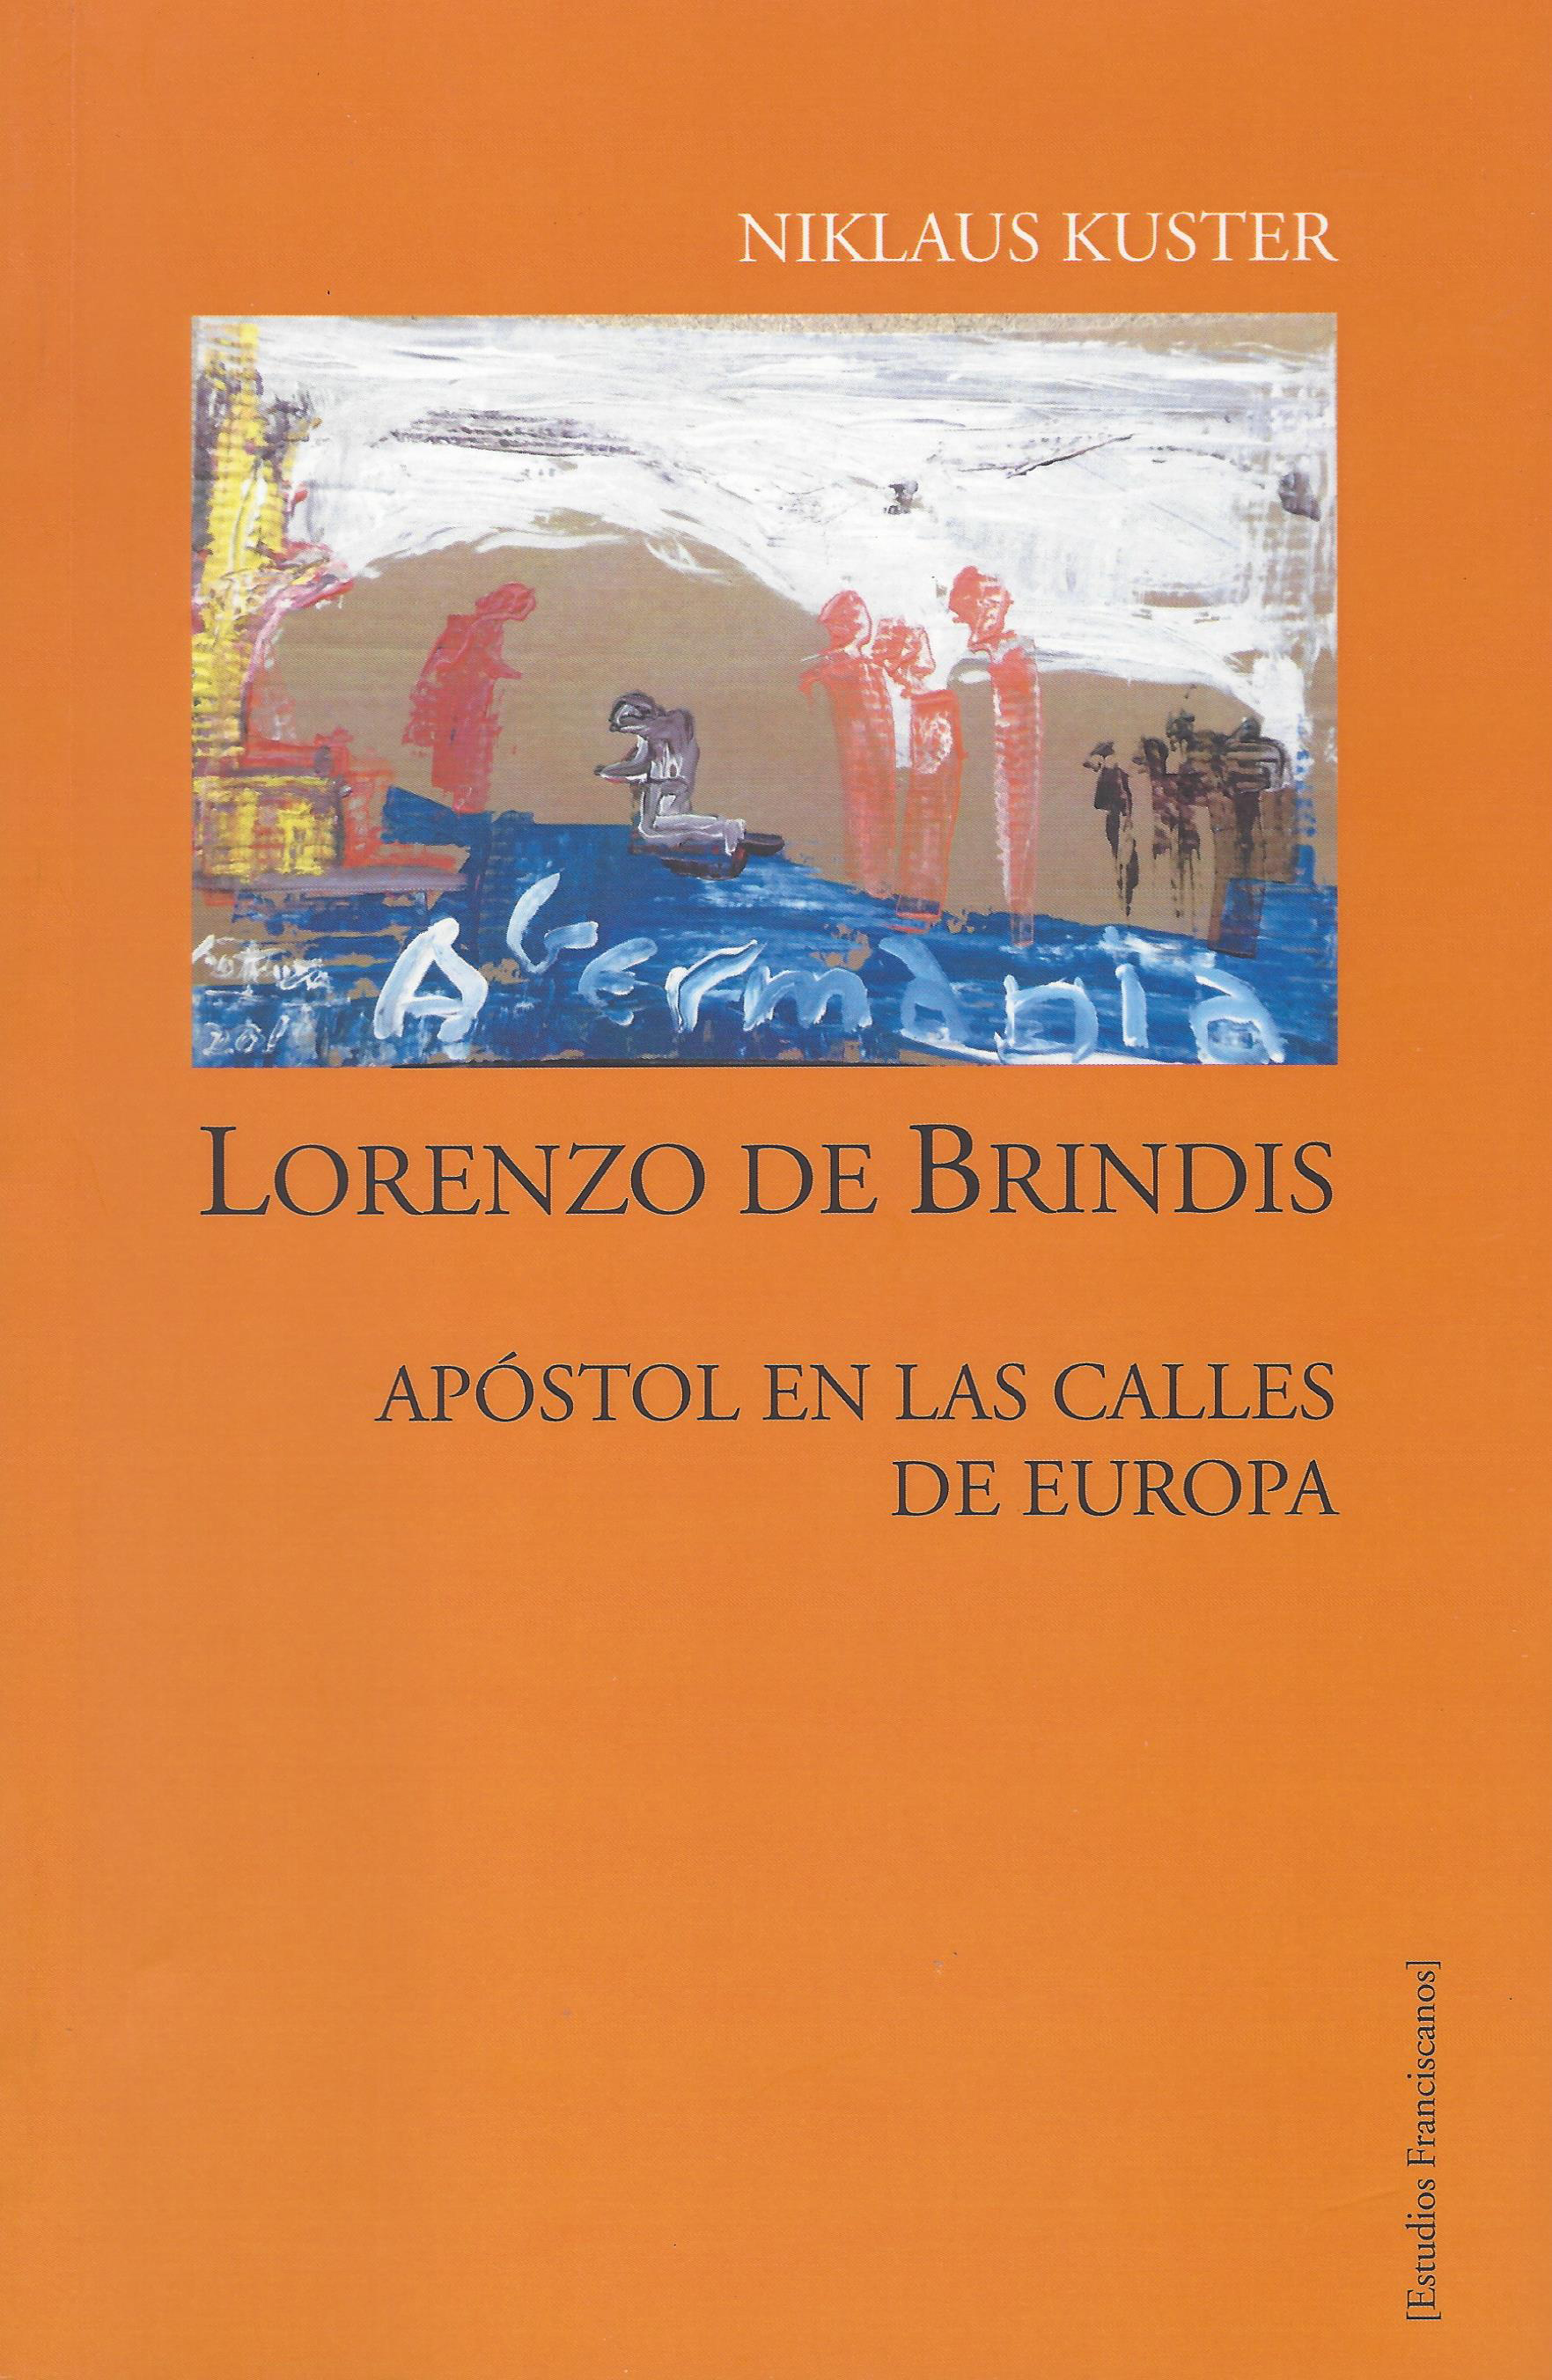 Lorenzo de Brindis. Apóstol en las calles de Europa